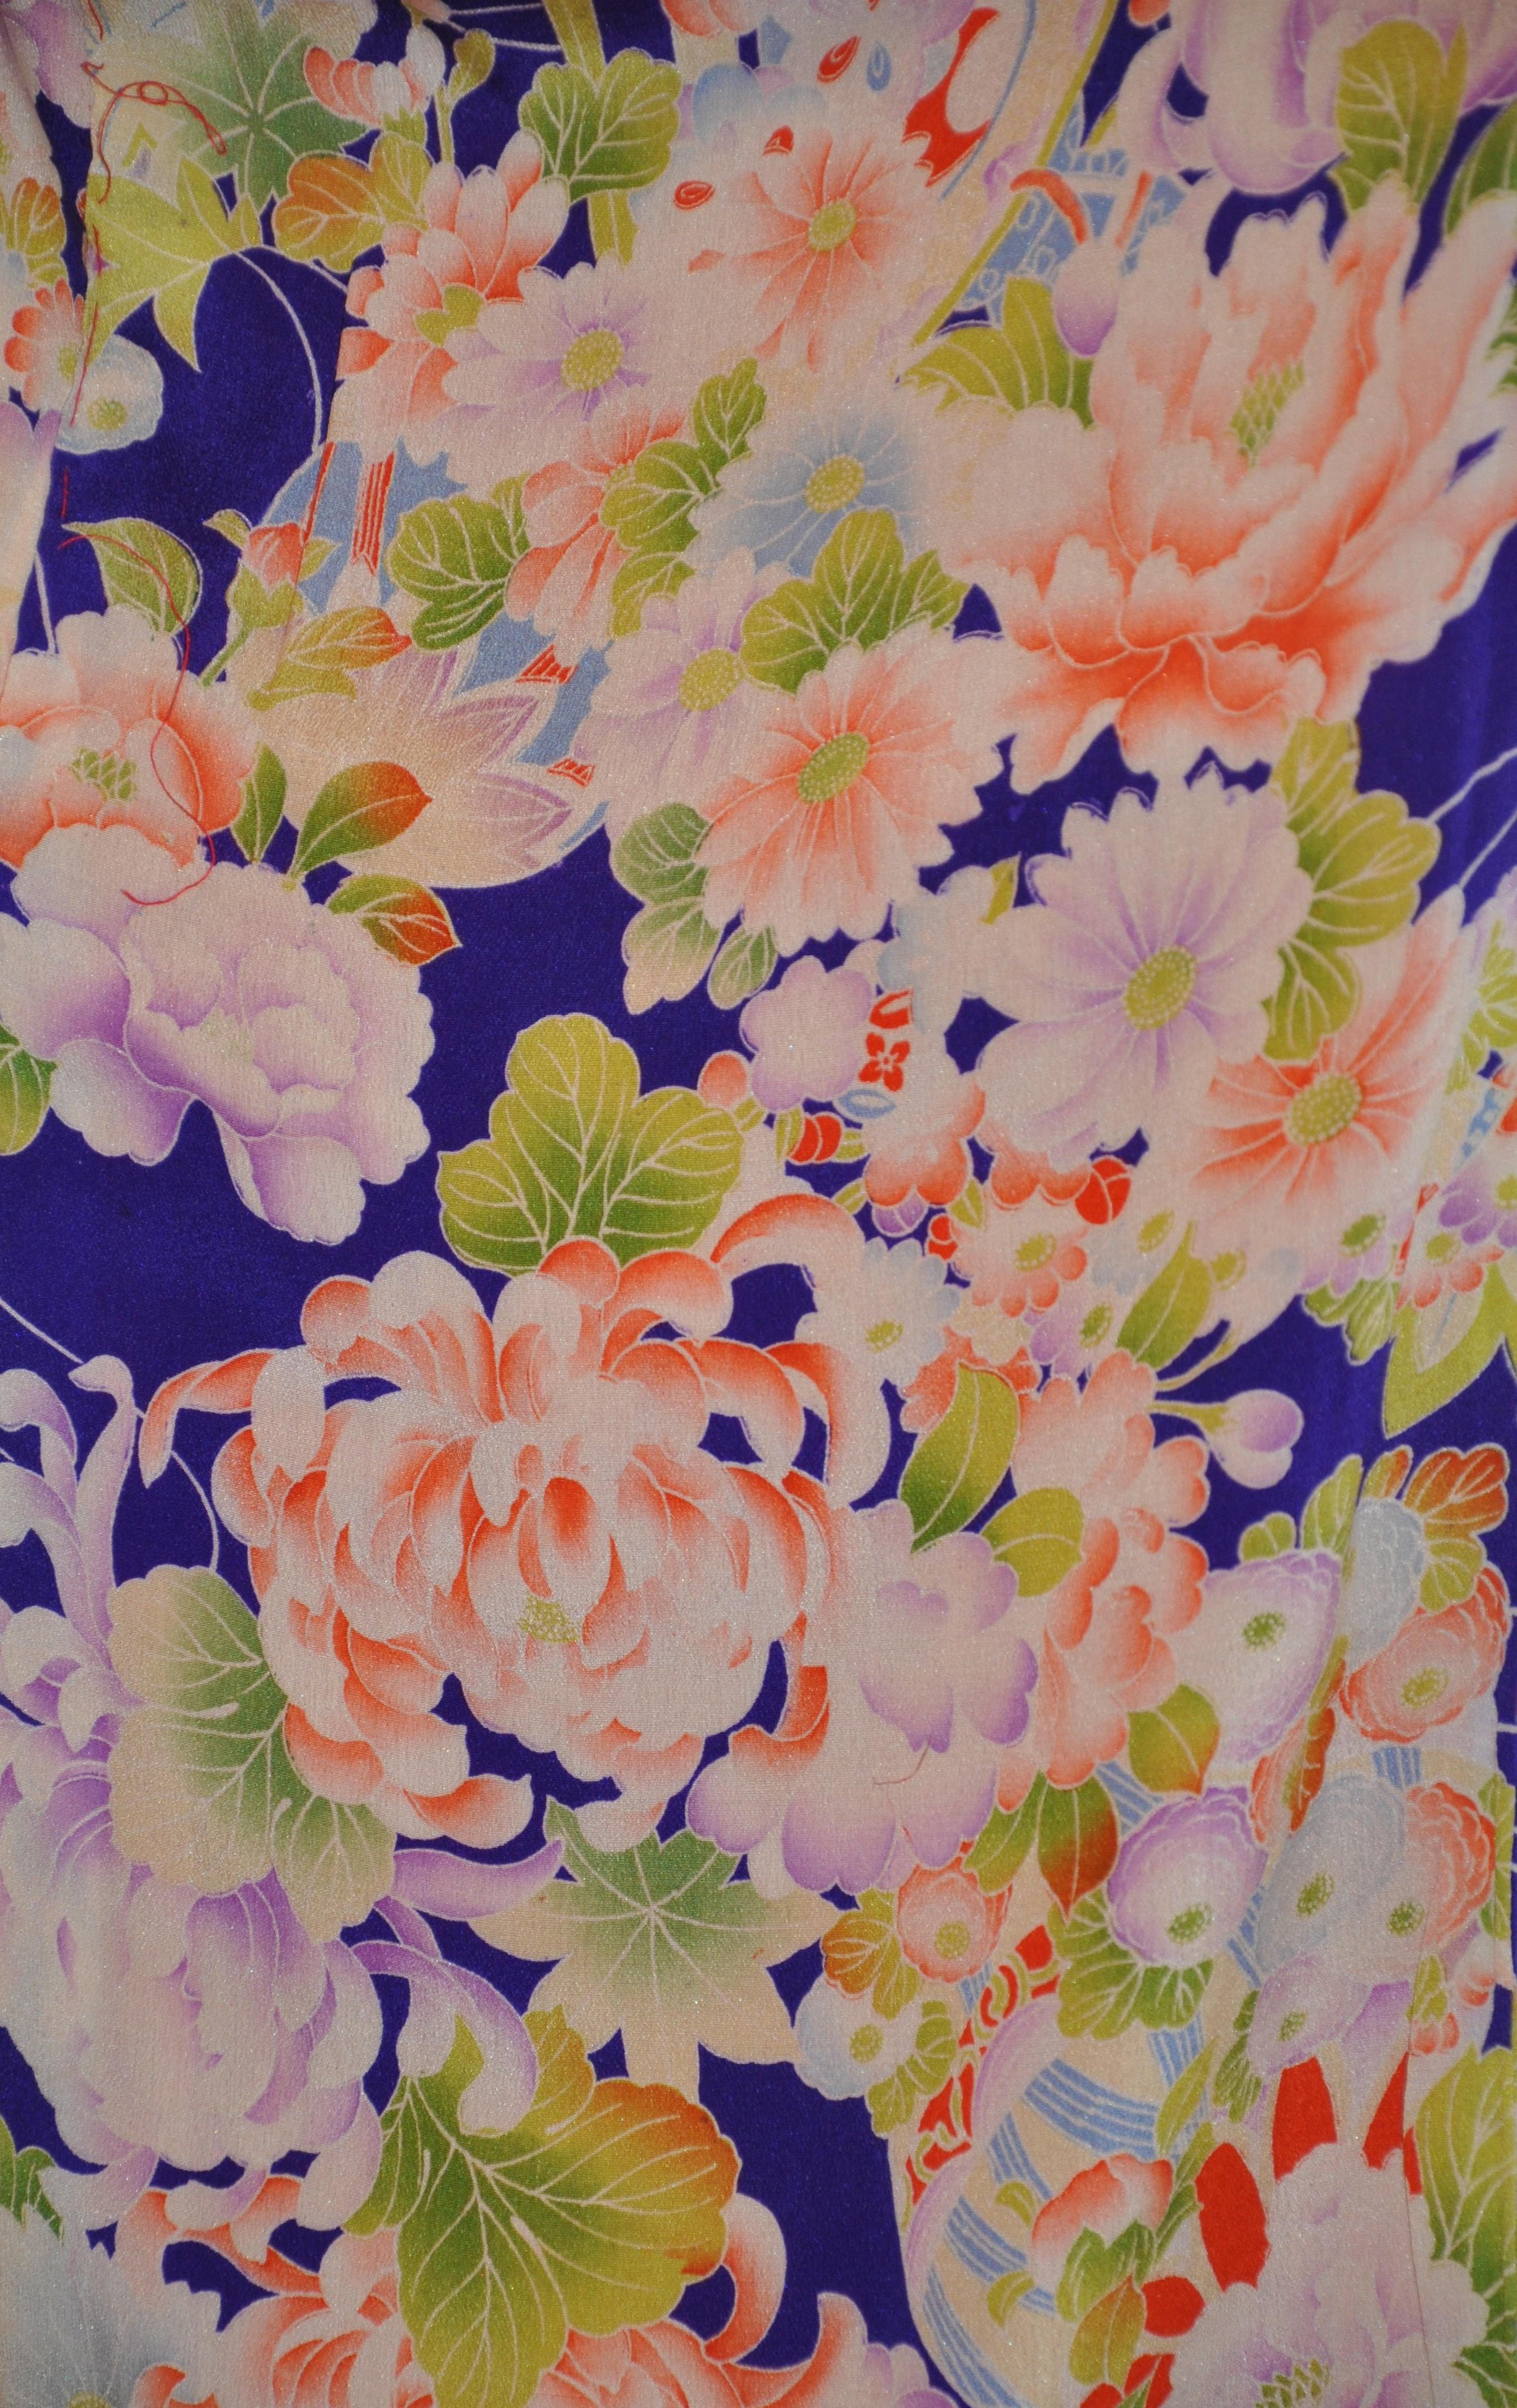        Diese wunderbar festliche kühne Multi-Farbe Multi-Florals Seide Kimono Maßnahmen 57 Zoll in der Länge. Der Achselumfang misst 44 Zoll, die Kragenbreite misst 2 1/2 Zoll, die Ärmellänge misst 32 Zoll, die Ärmelbreite misst 12 Zoll, die